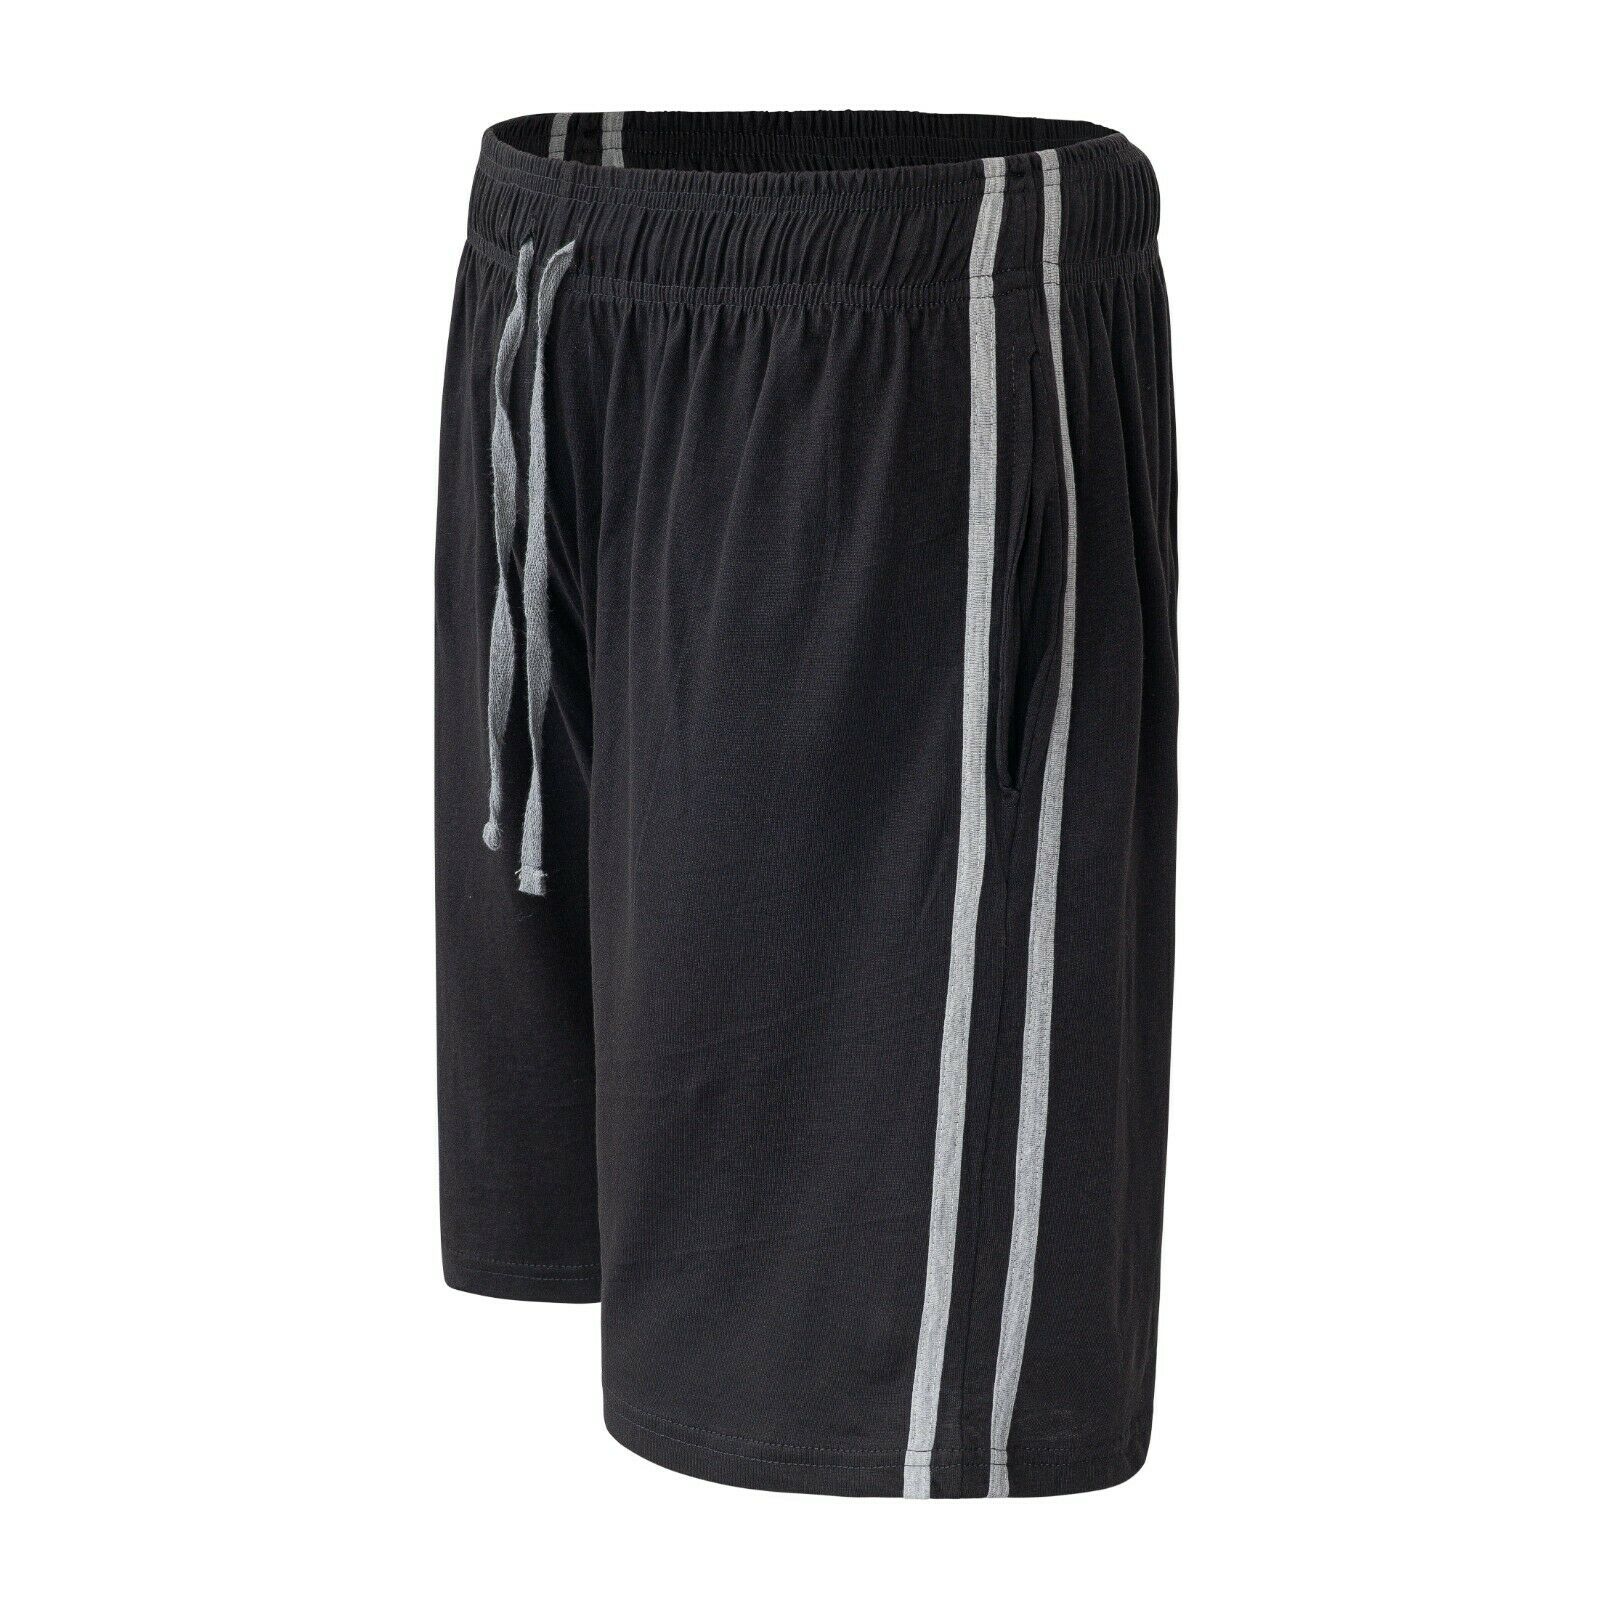 Mens Loungewear Shorts PJ Nightwear Pyjama Bottoms Cotton Sleepwear Pants m-2xl - Picture 1 of 1